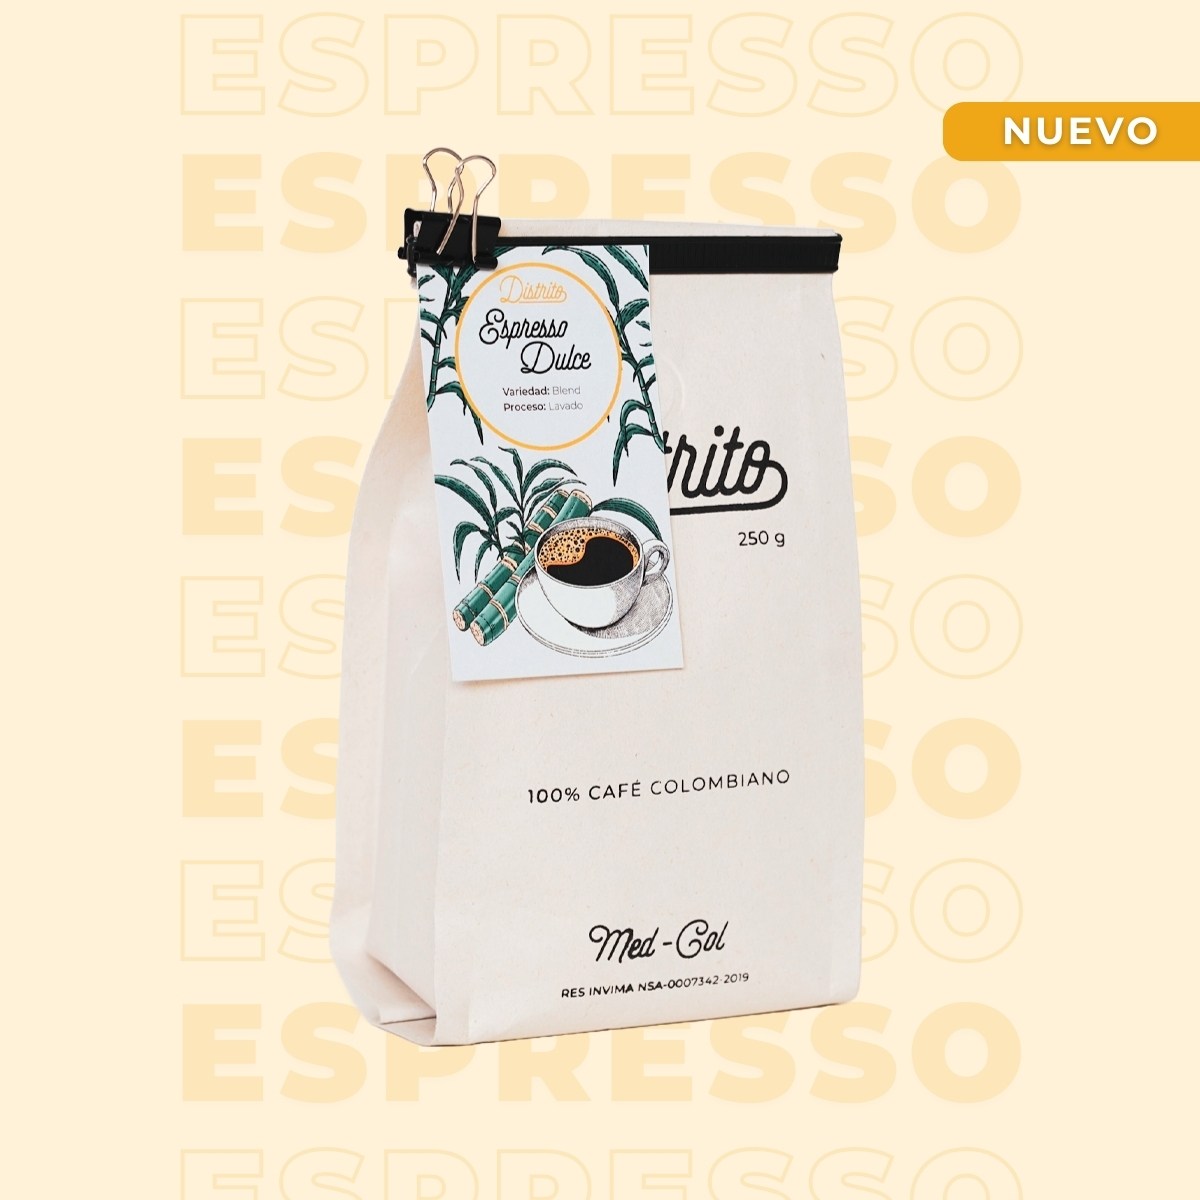 Espresso dulce - Café Colombiano - Café de Especialidad